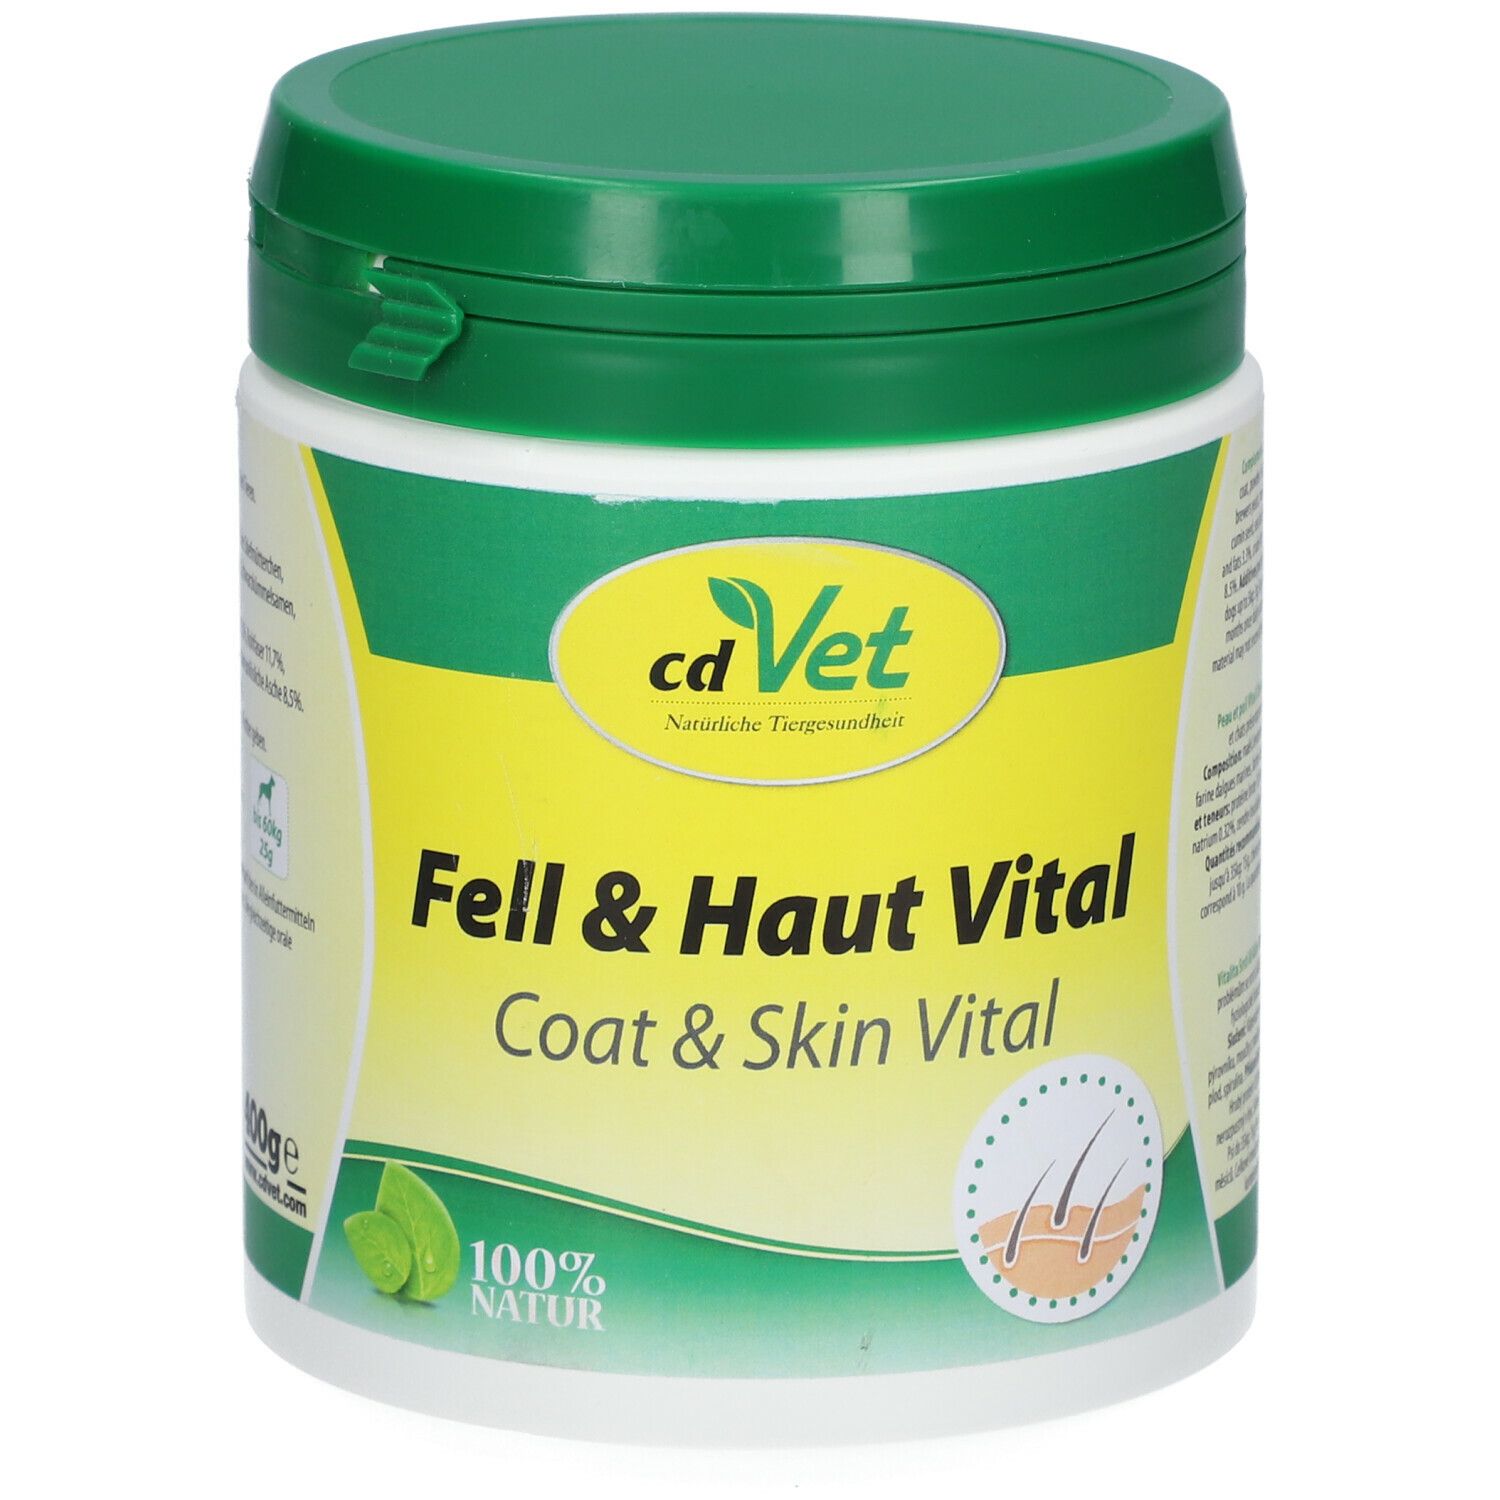 cd Vet Fell & Haut Vital